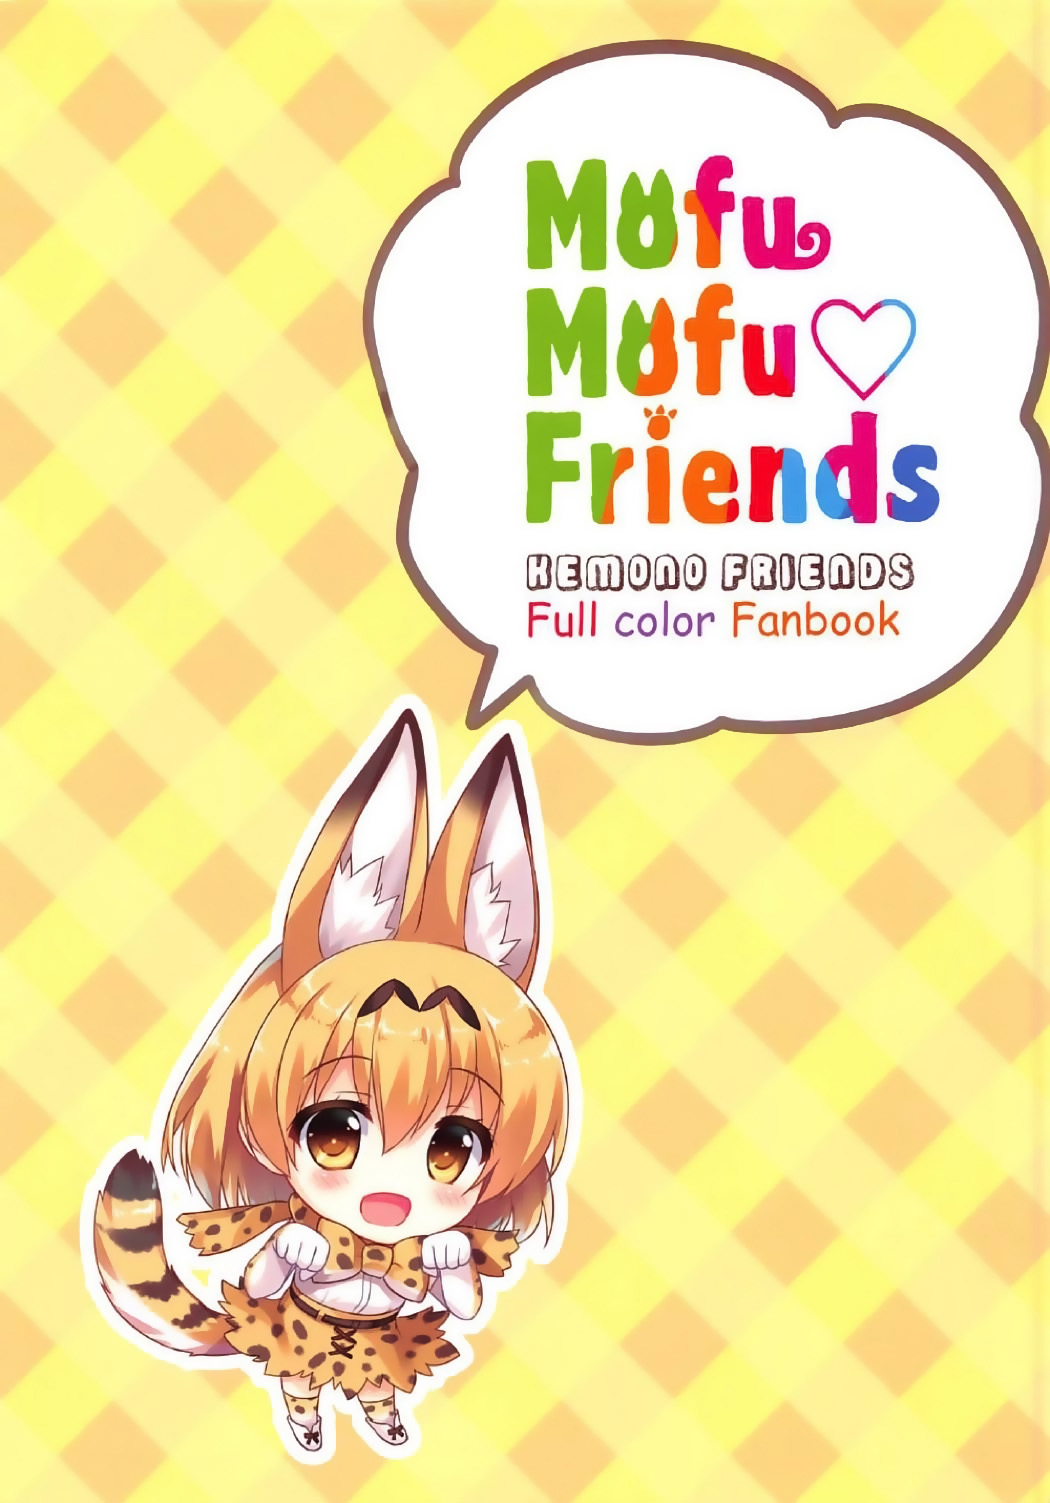 Mofu Mofu Friends (Kemono Friends)